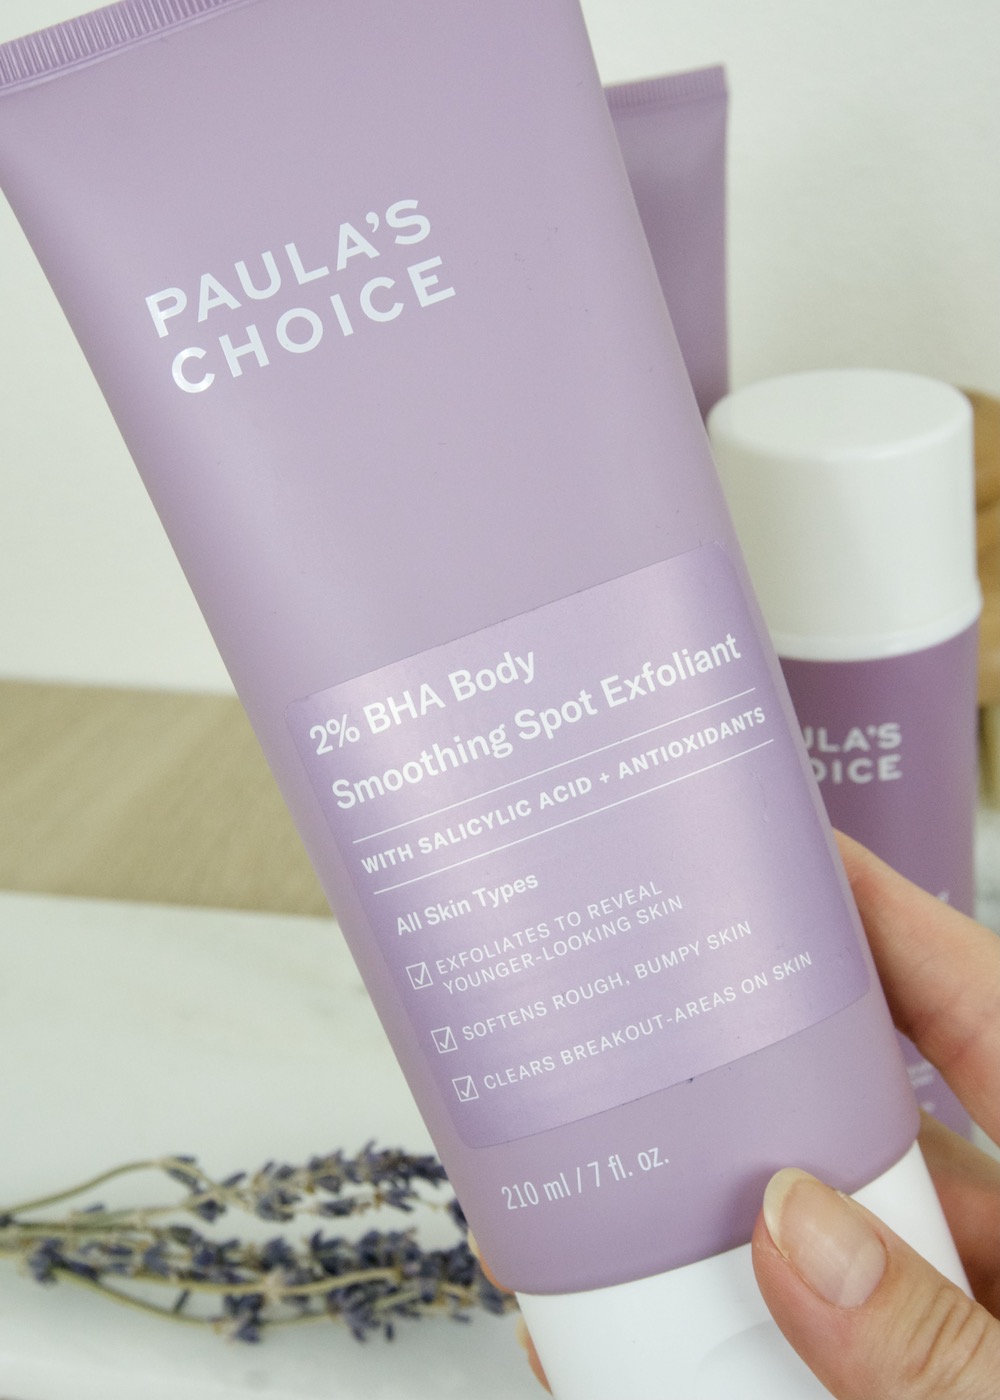 Paula's Choice BHA Body Spot Exfoliant product